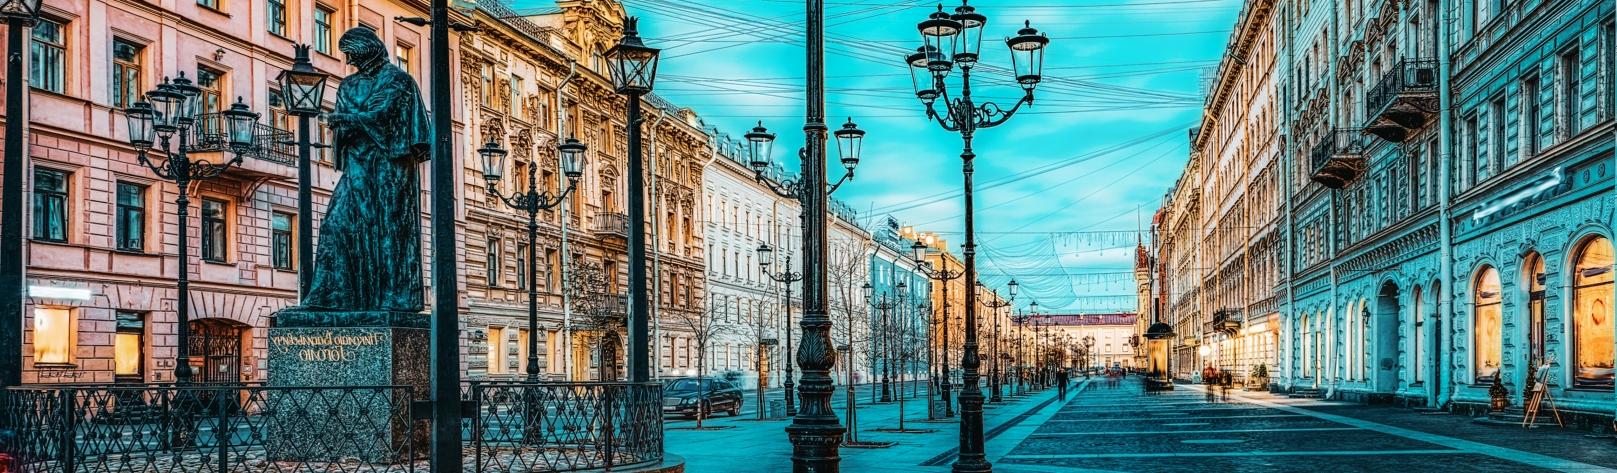 Авторская пешеходная экскурсия по Золотому треугольнику Санкт-Петербурга со скидкой до 30%